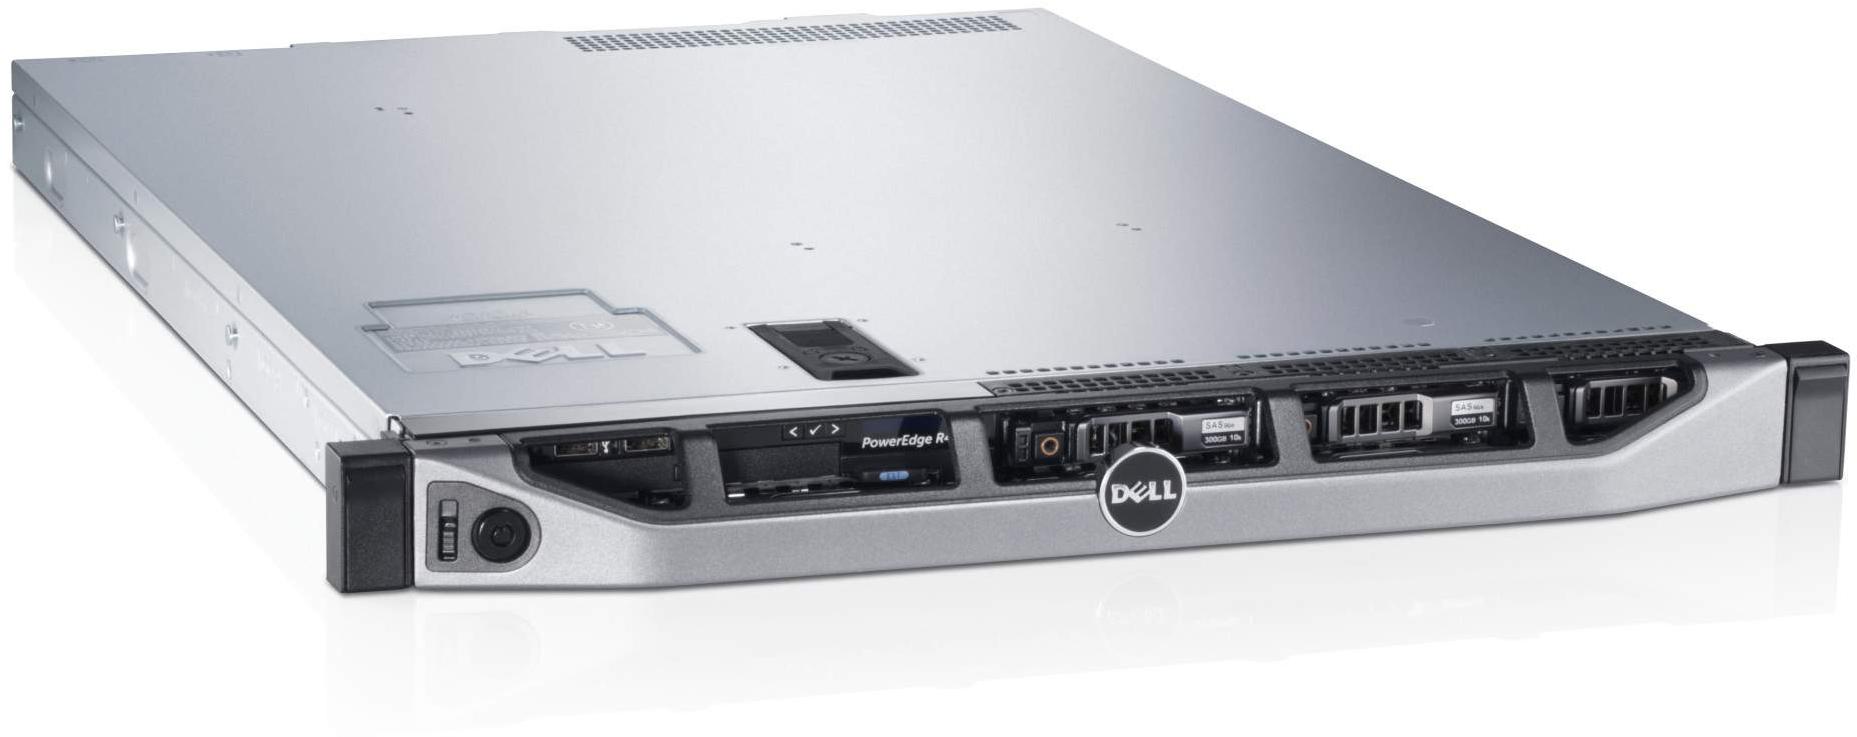     Dell PowerEdge R620 (210-39504-130)  2